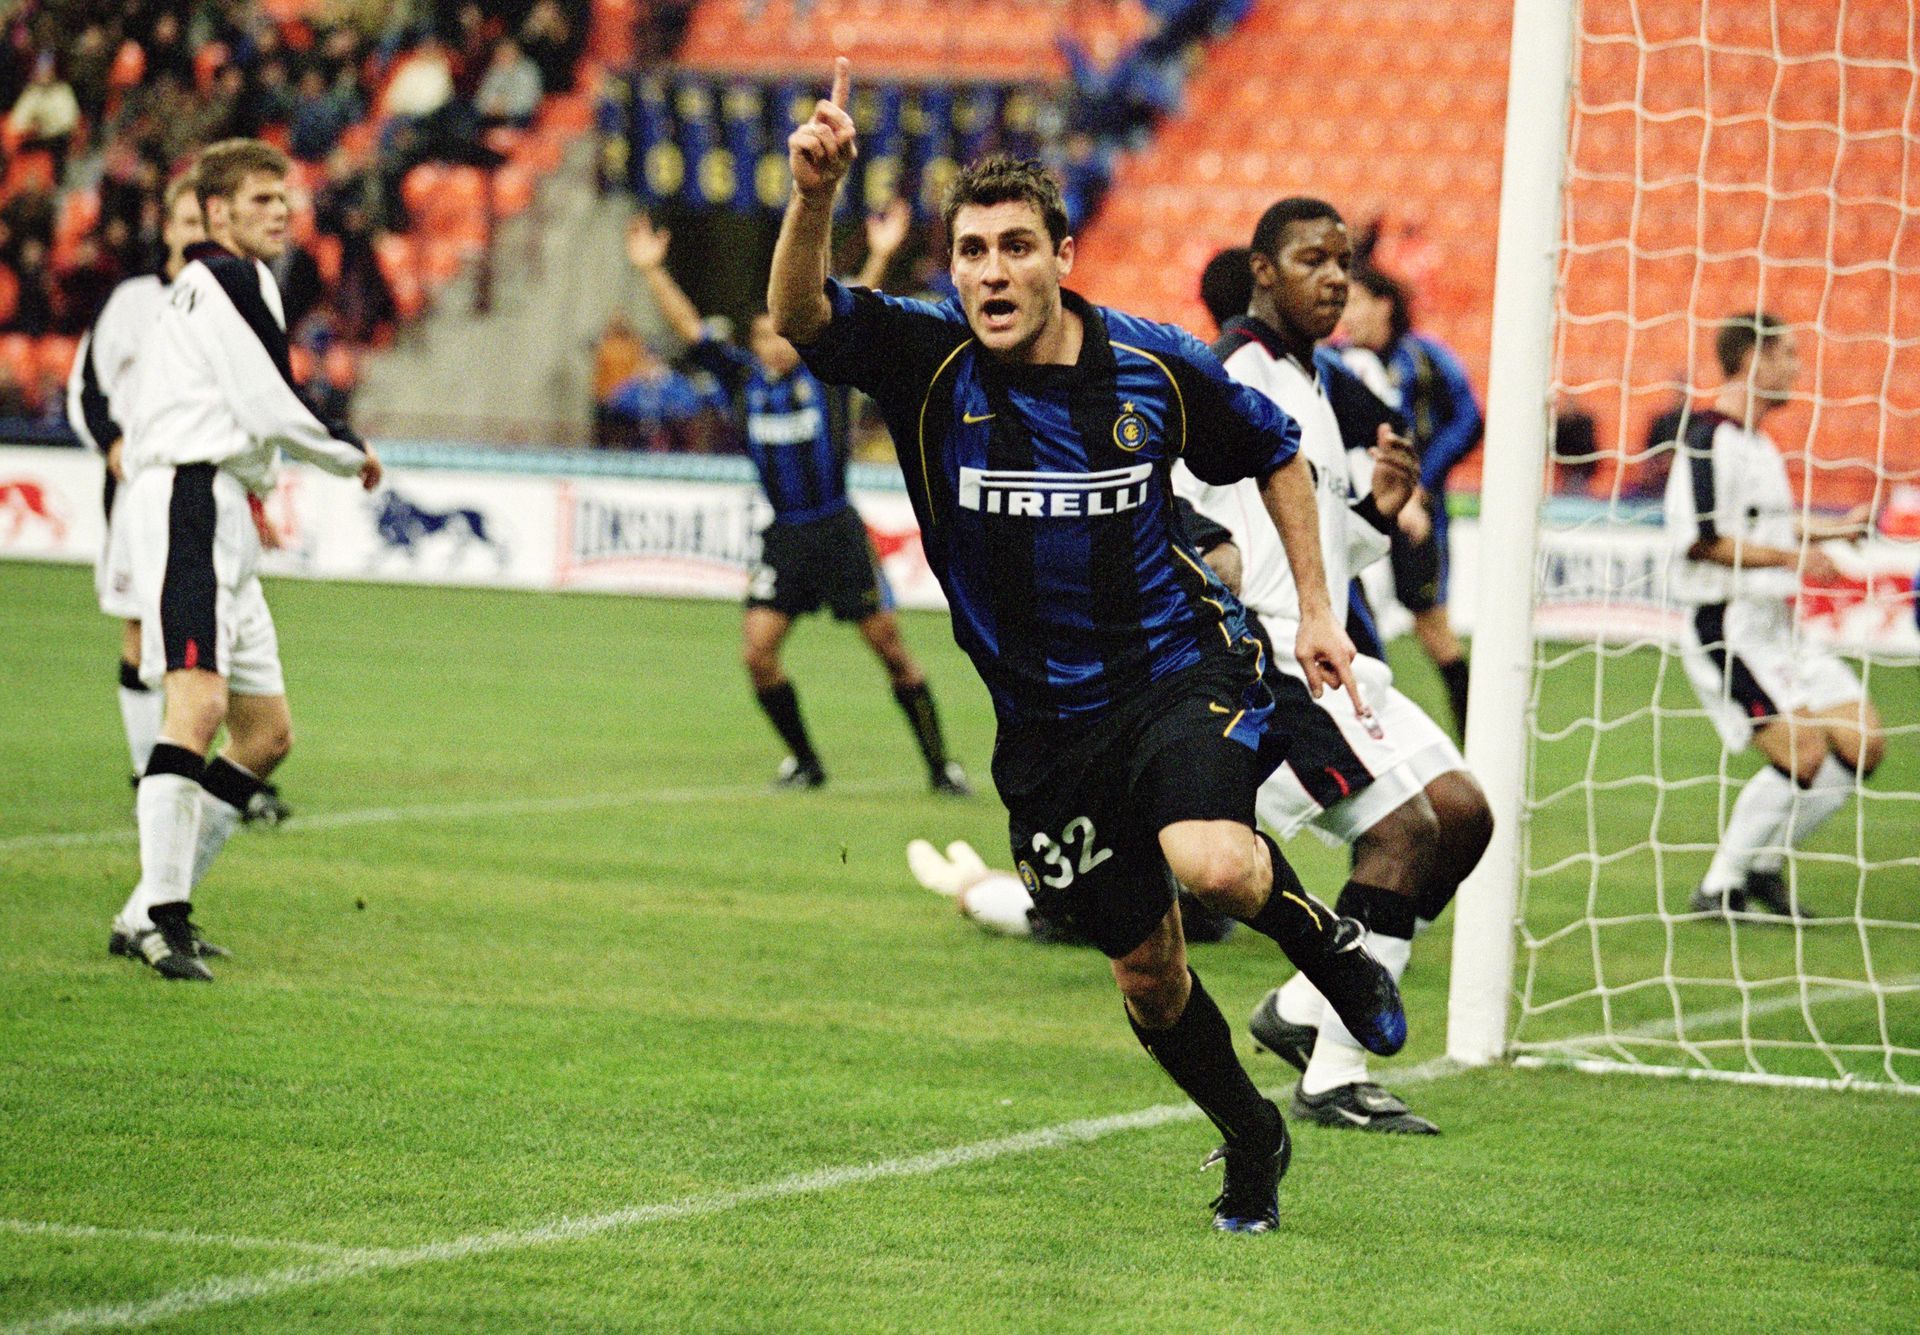 През 1999 г. "Интер" счупи световния рекорд за трансфер, като даде 32 милиона английски лири (нямаше евро) на "Лацио" за 26-годишния Виери. Бобо запретна ръкави, направи смъртоносен тандем с Роналдо, а зад гърба им понякога играеше Роберто Баджо... Наниза 123 гола в 188 мача със синьо-черната фланелка, без обаче да стане шампион в този супер отбор.